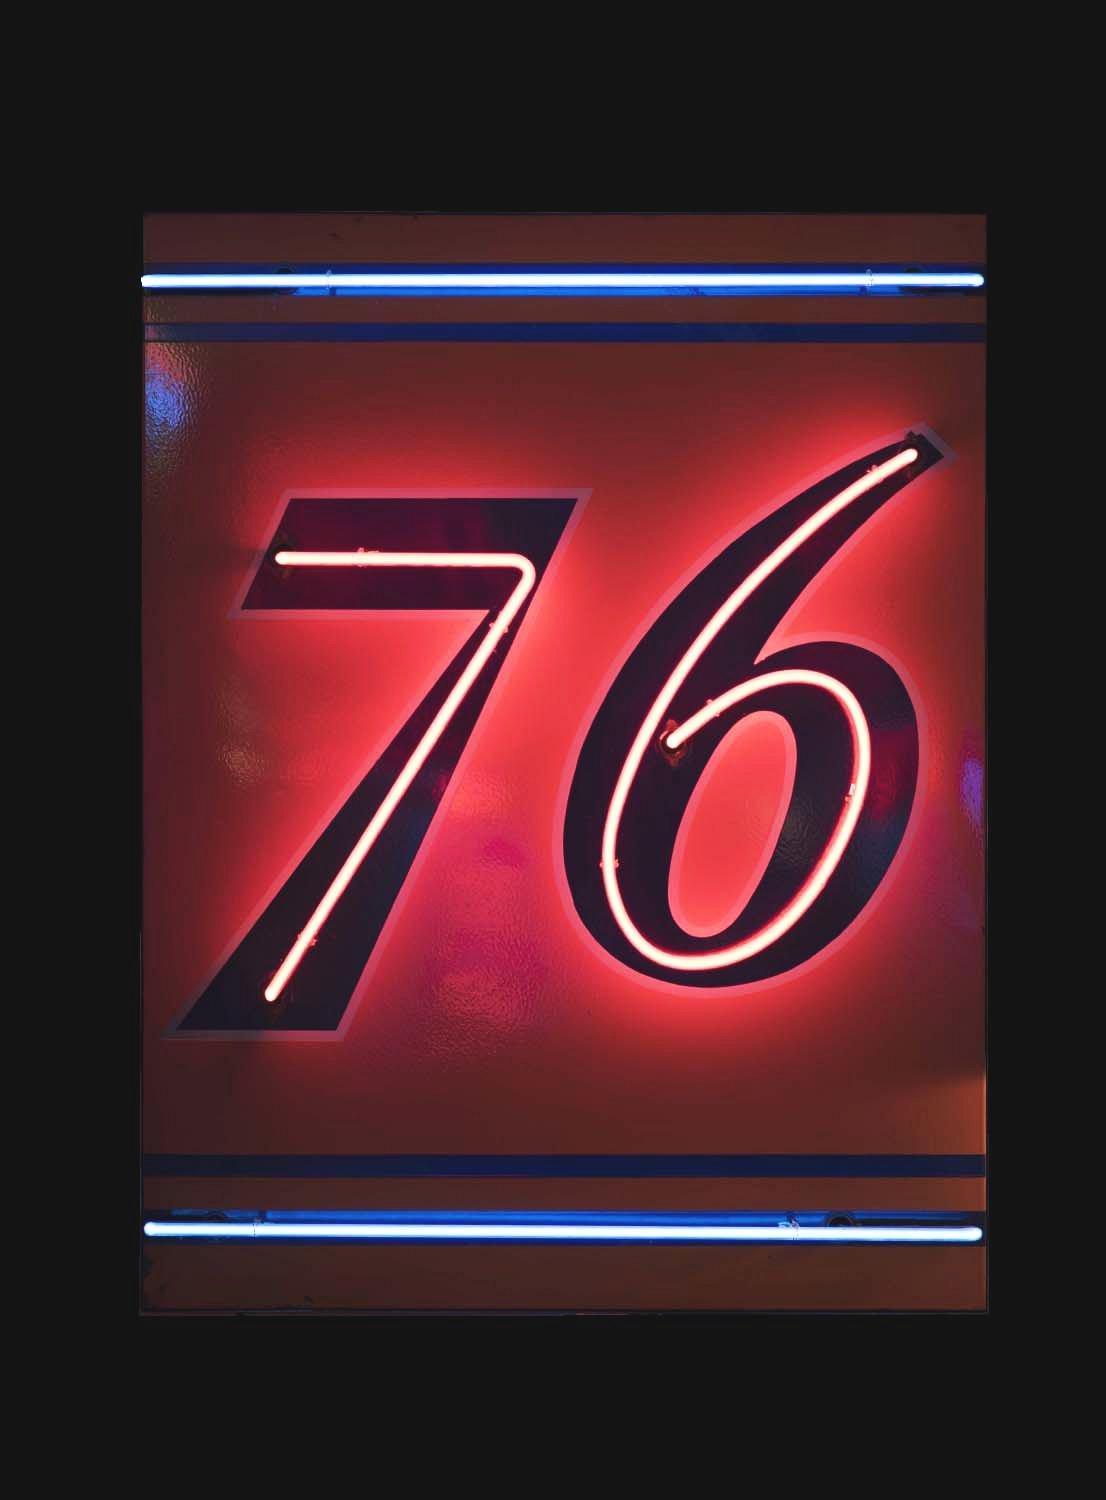 Union "76" Gasoline Porcelain Neon Sign.